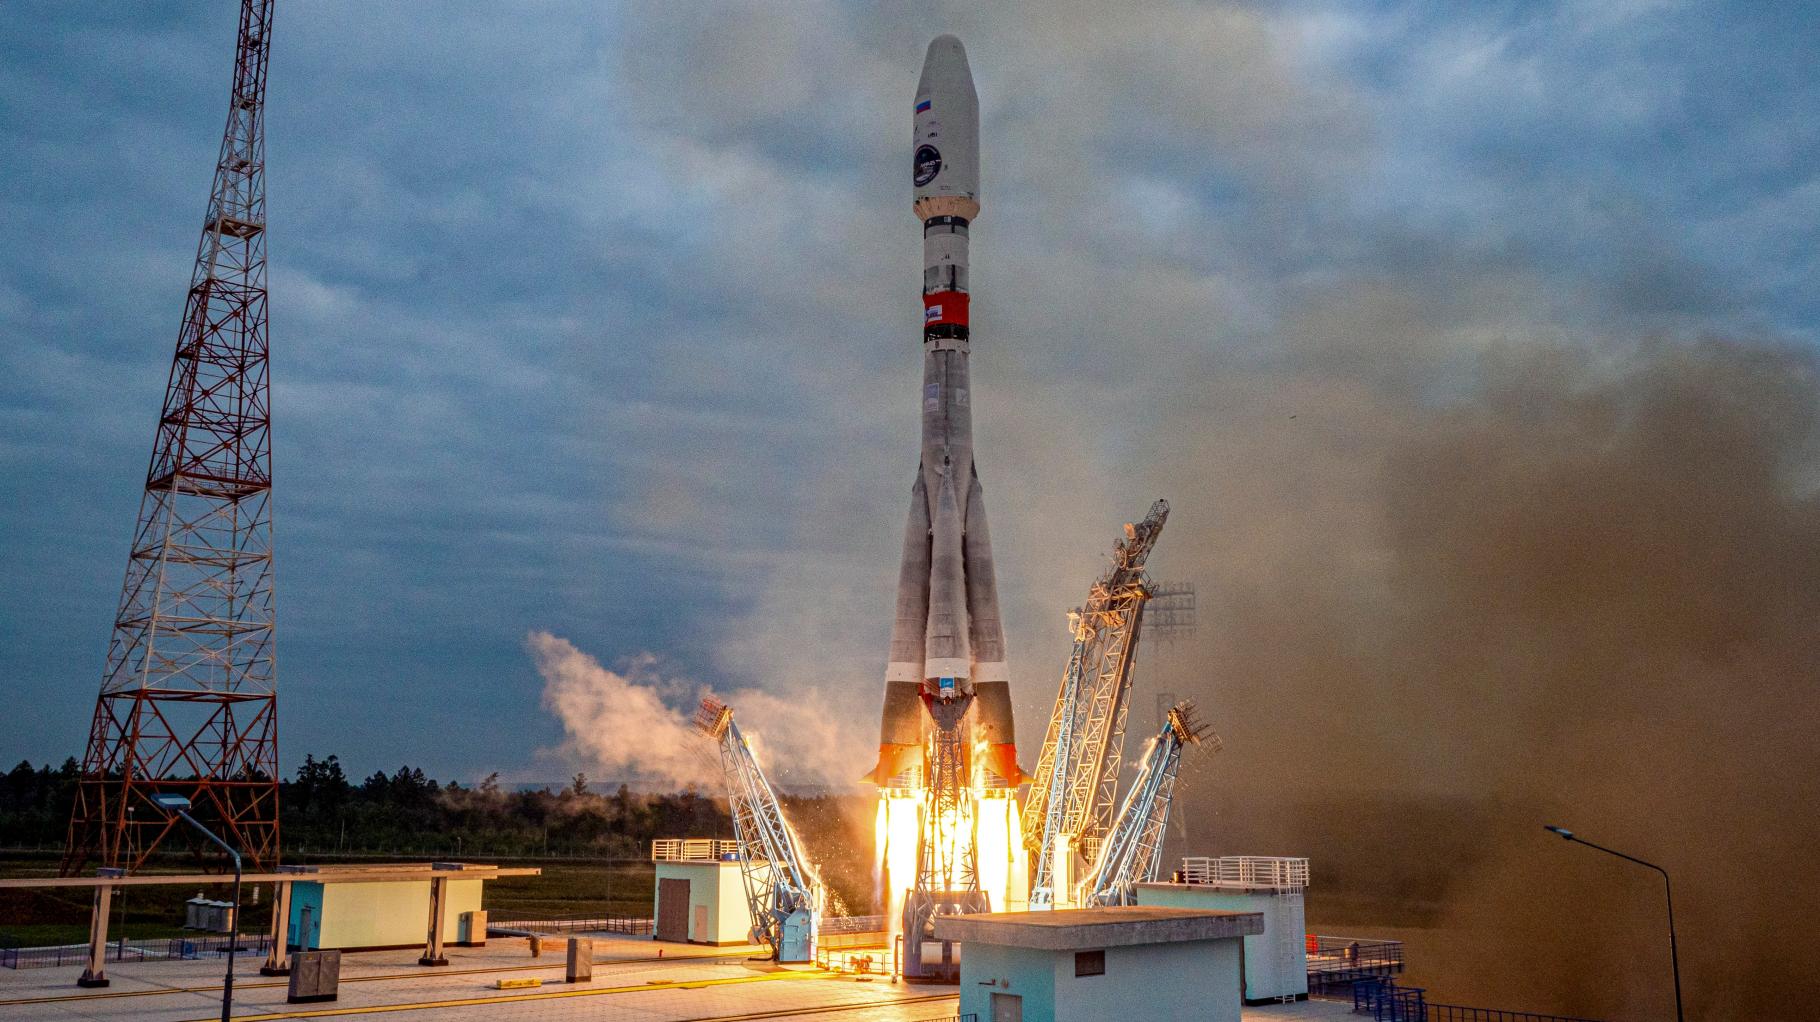 Mission gescheitert: Russische Sonde „Luna-25“ bei Aufprall auf Mondoberfläche zerstört